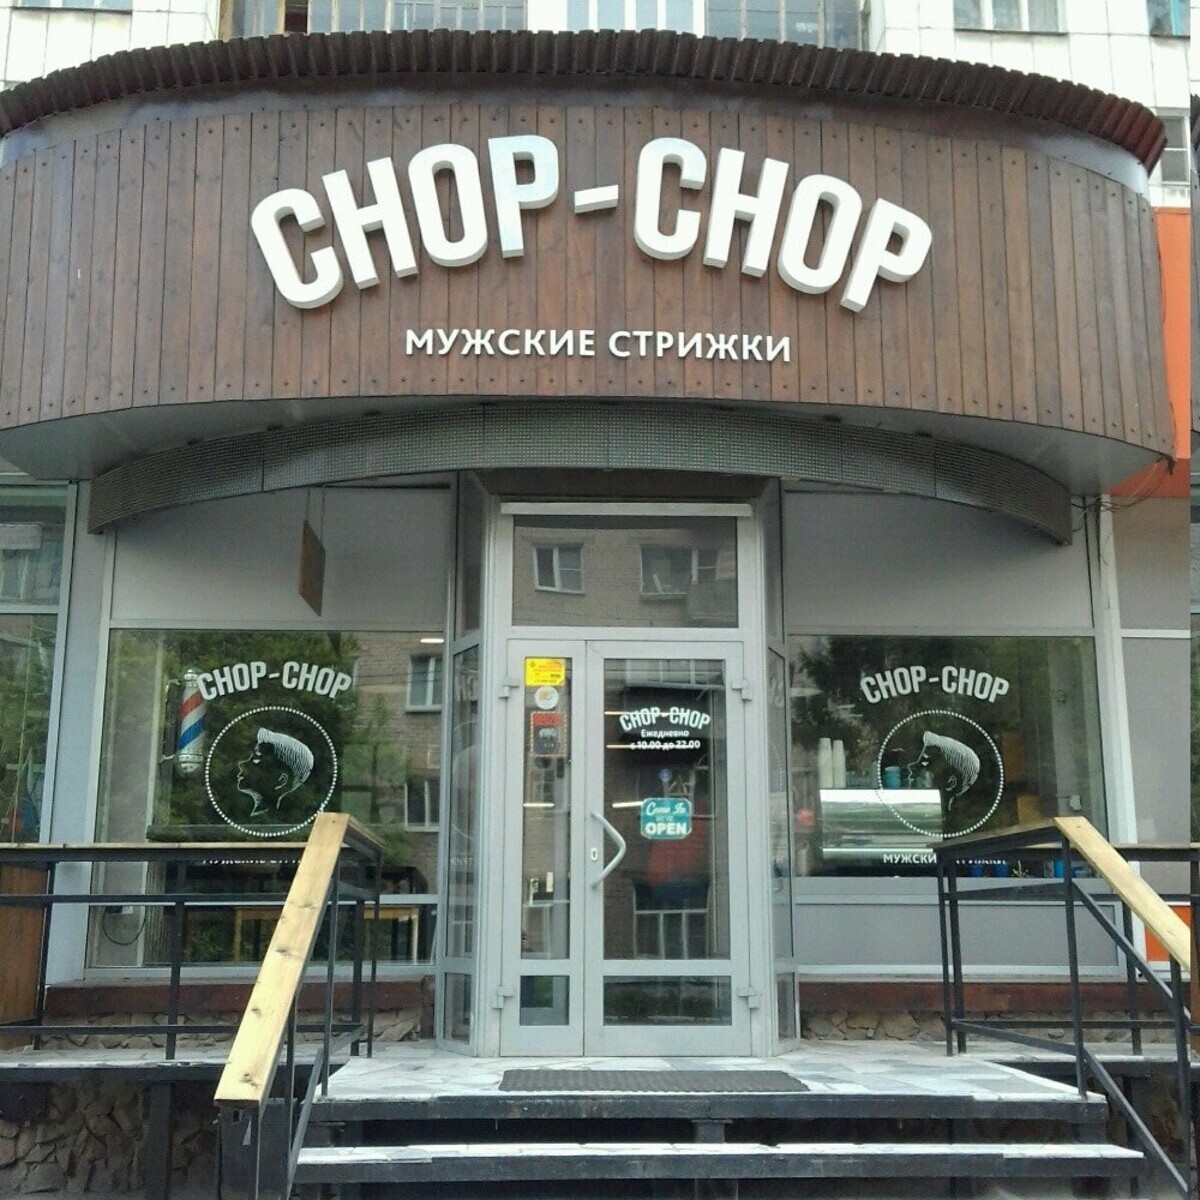 chop-chop - Челябинск - Витрина с улицы